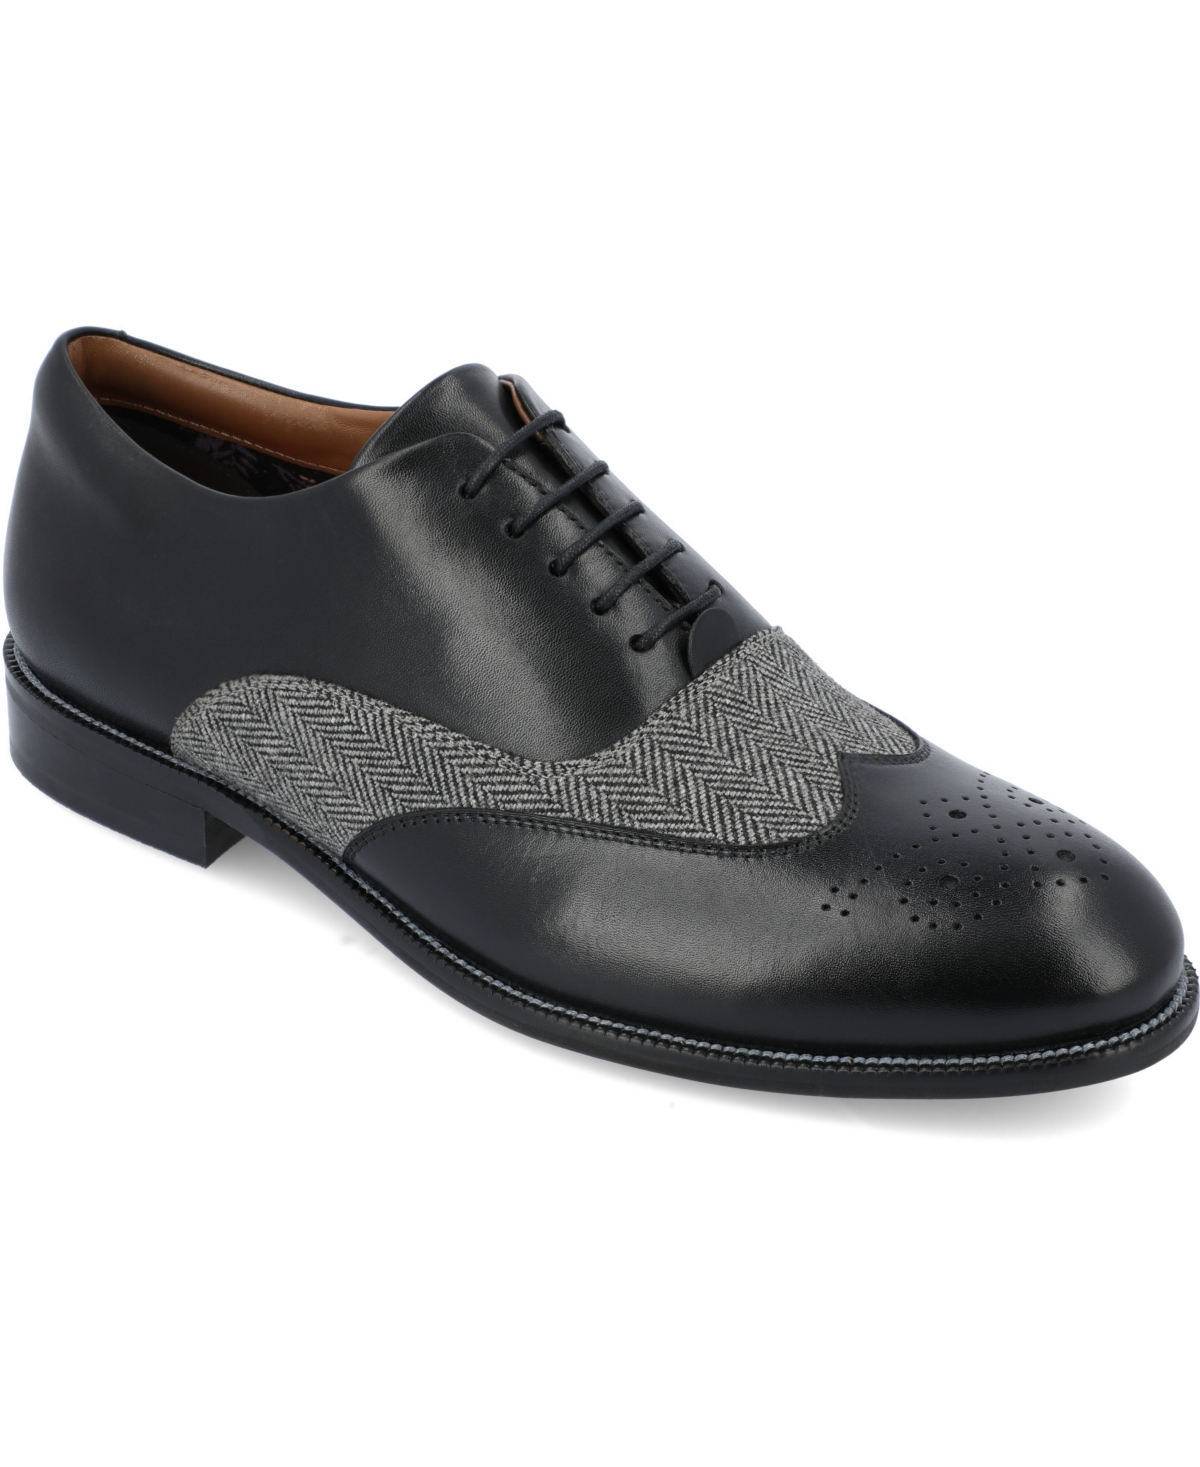 Men's Denzell Tru Comfort Foam Oxford Dress Shoes - Cognac